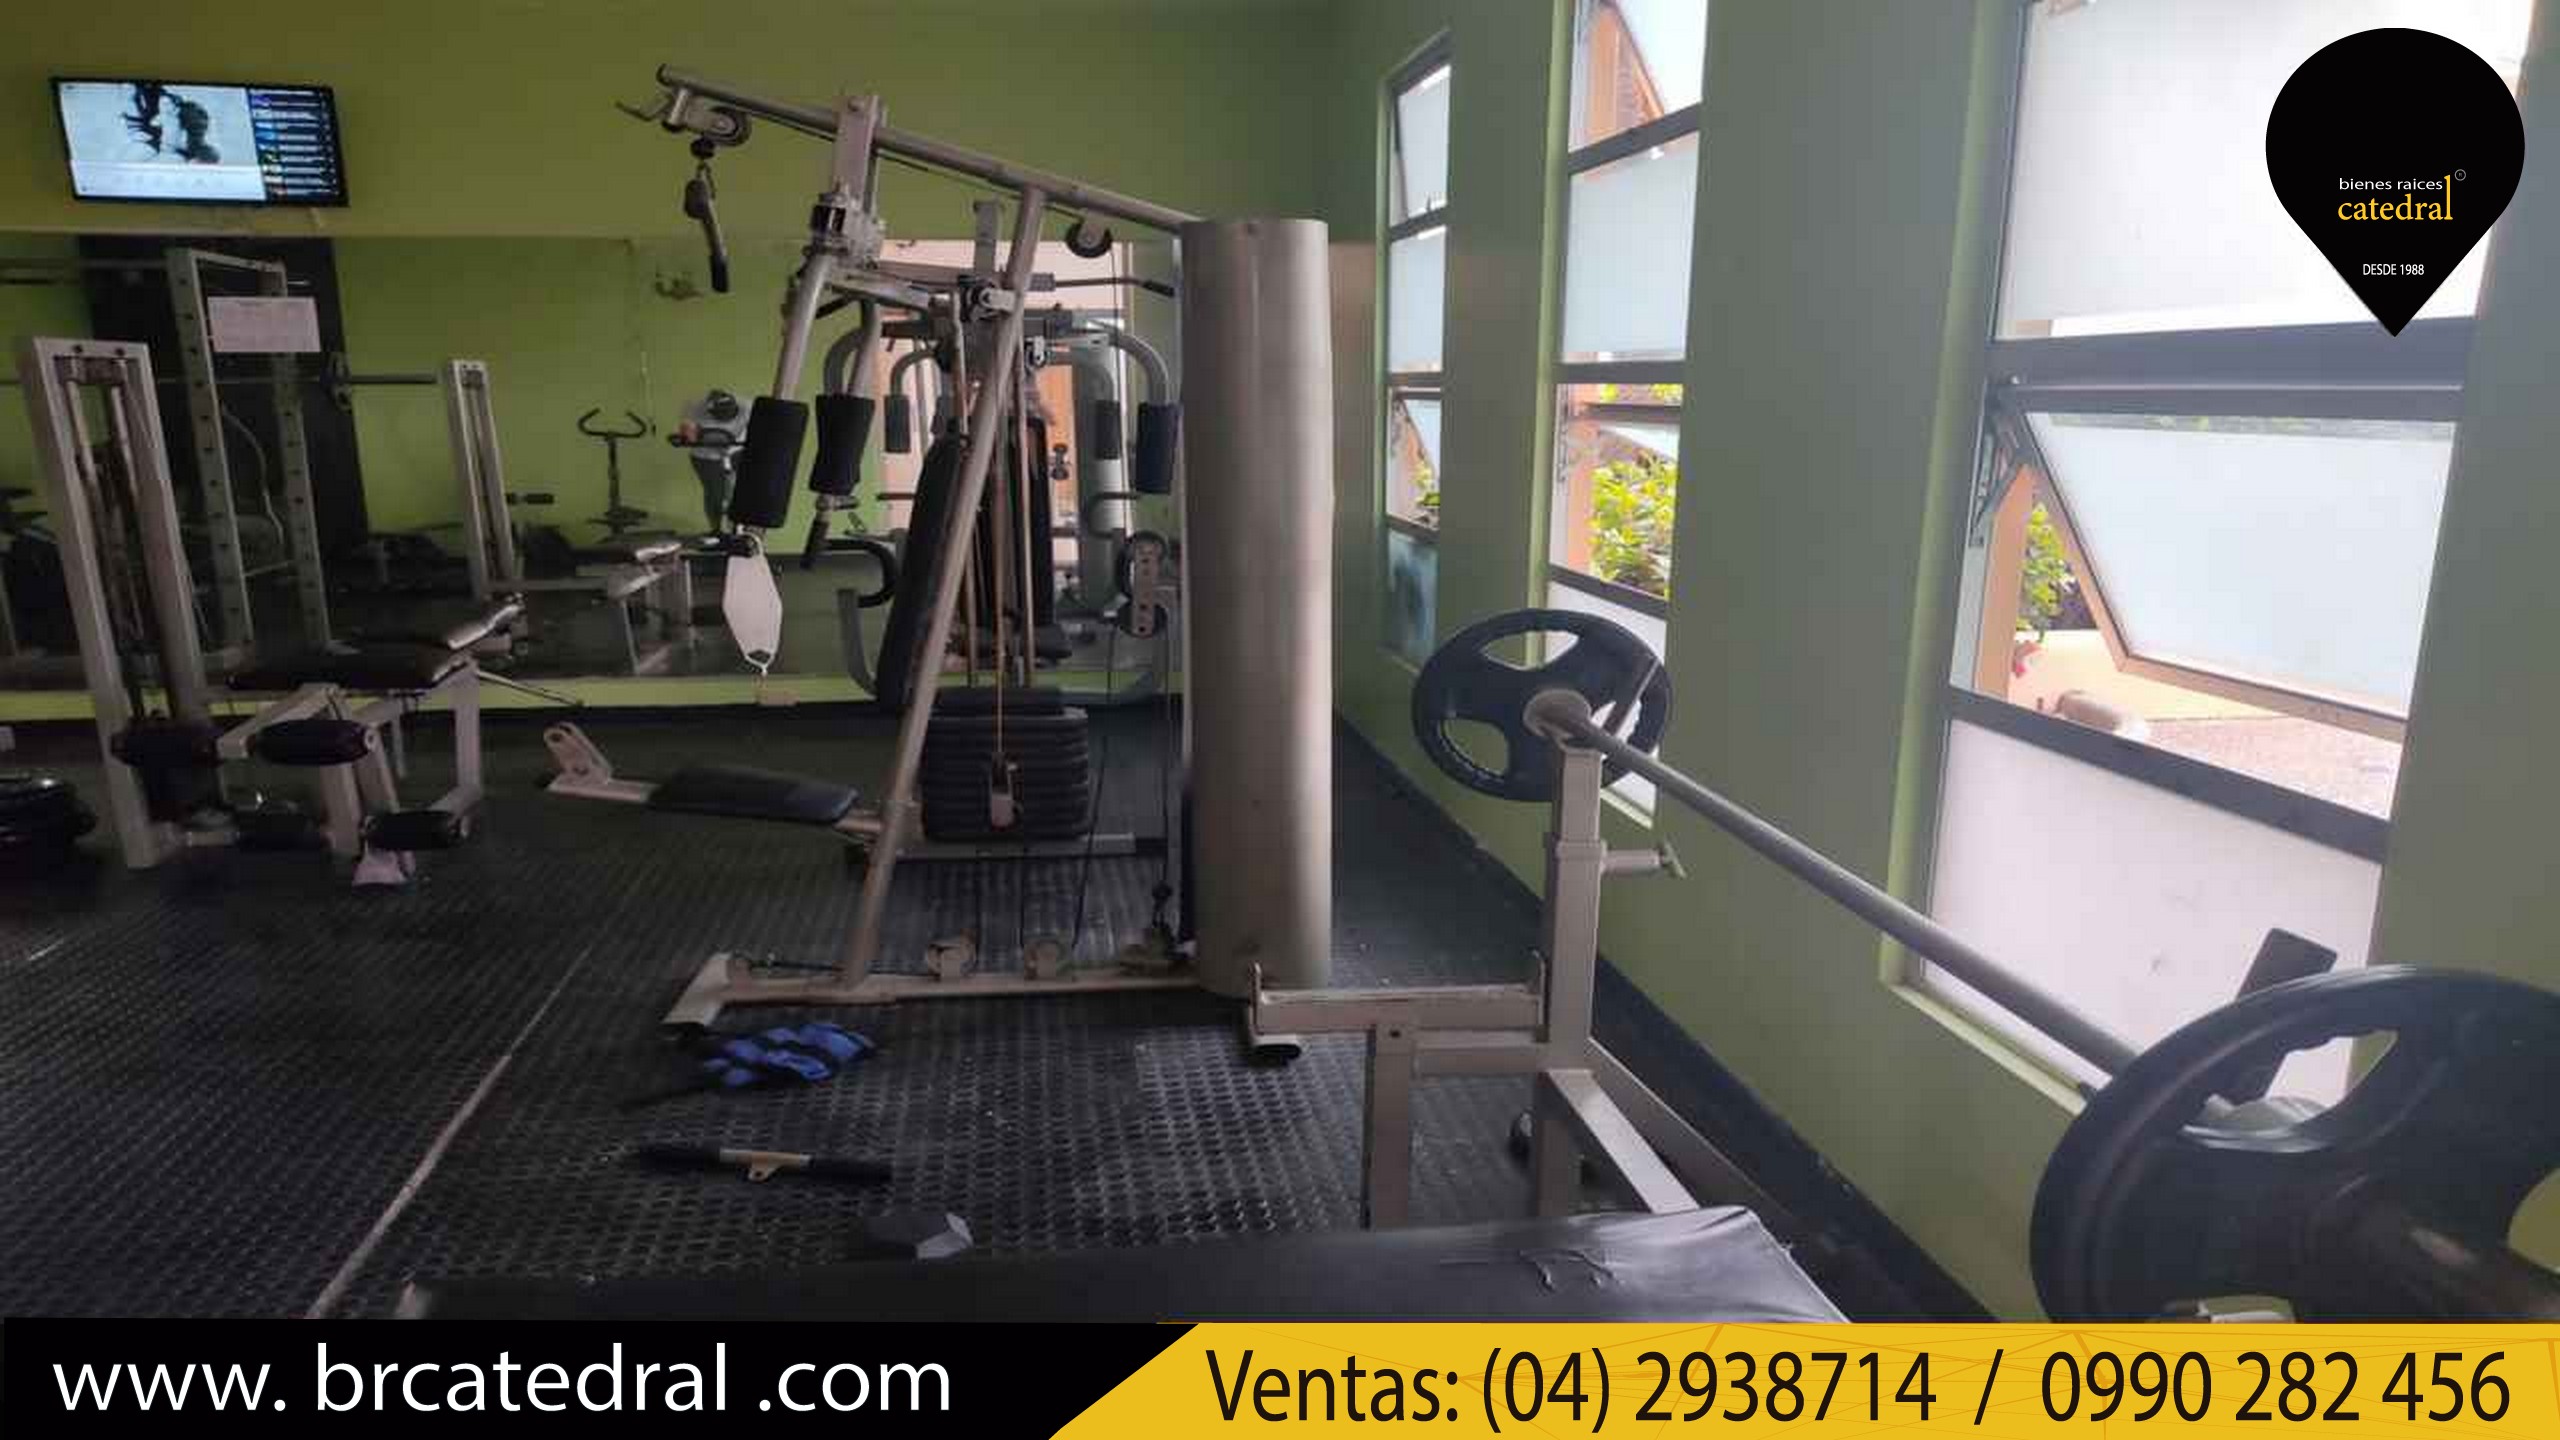 Villa Casa de Venta en Guayaquil Ecuador sector Urb. Volare